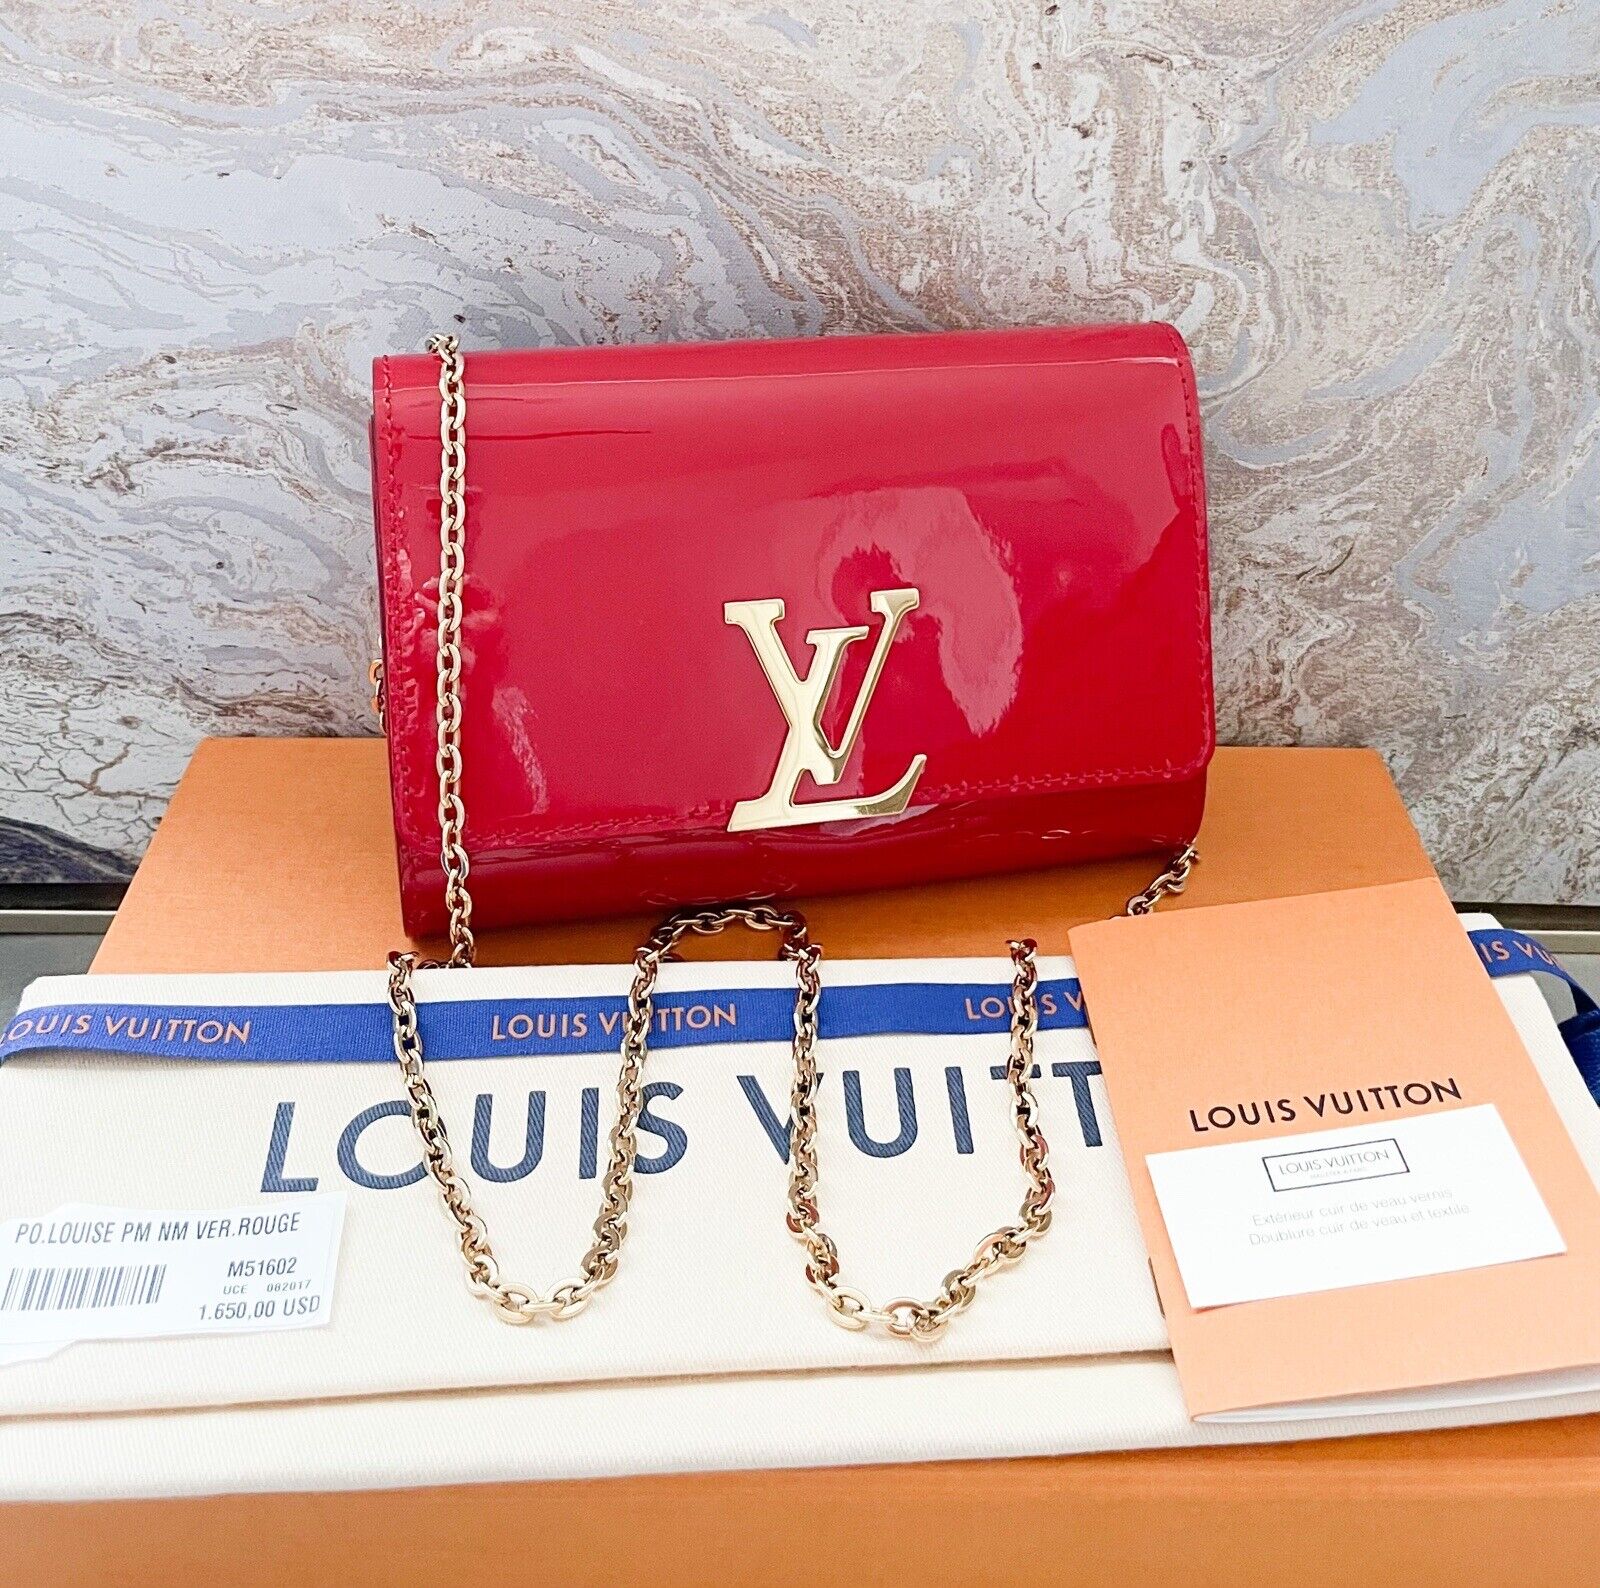 LOUIS VUITTON Louise Patent Leather Long Wallet Black